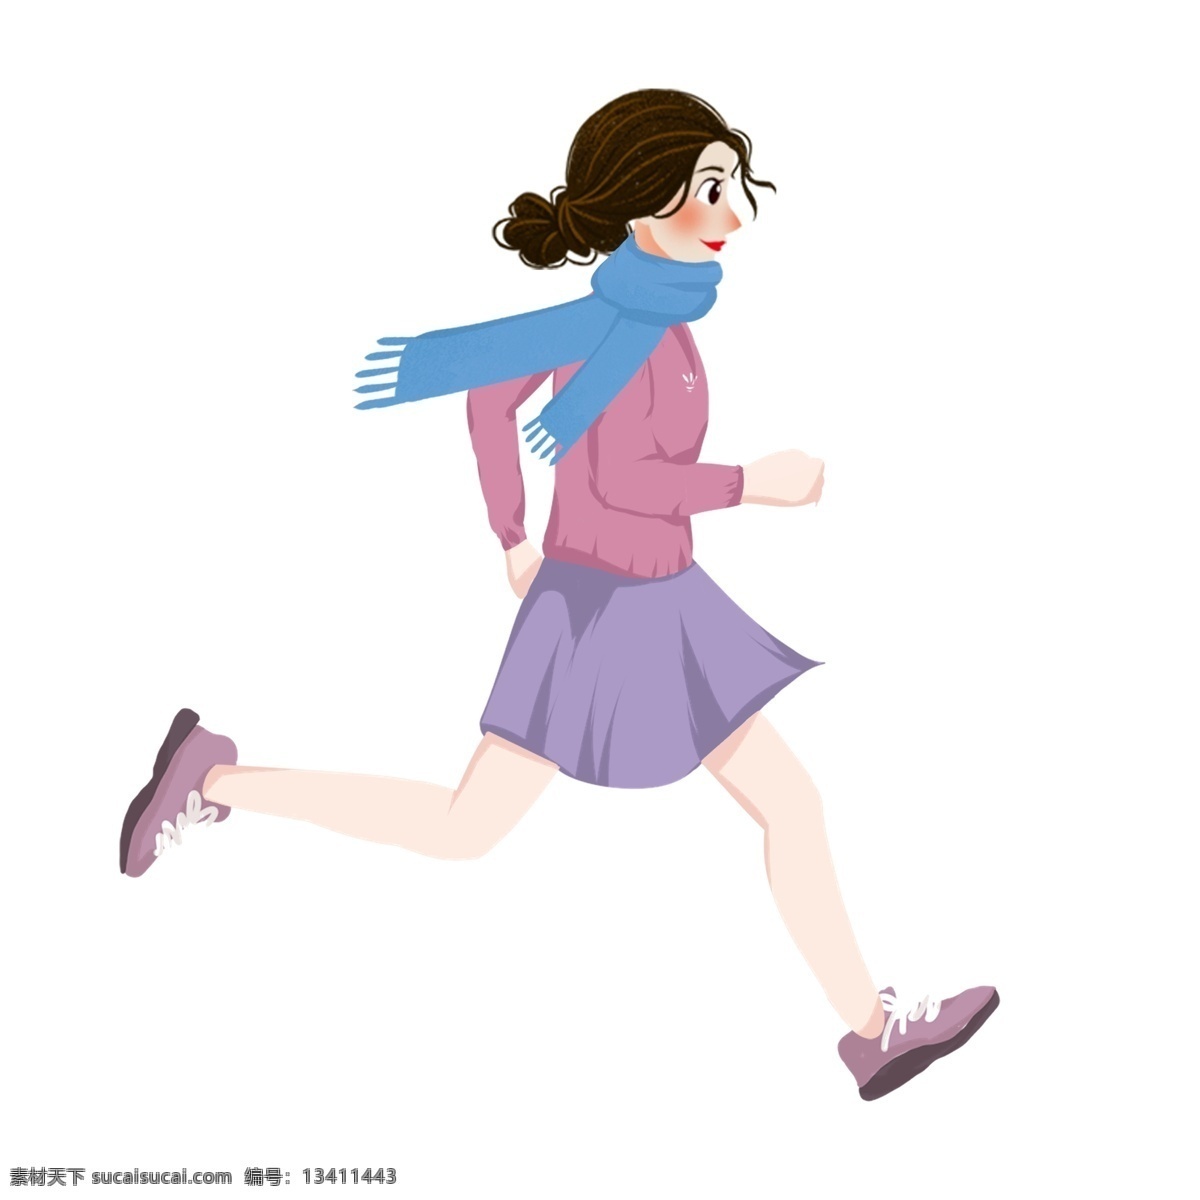 跑步 女孩 人物 元素 商用 冬季 简约 奔跑 设计元素 手绘 手绘图案 元素设计 创意元素 psd元素